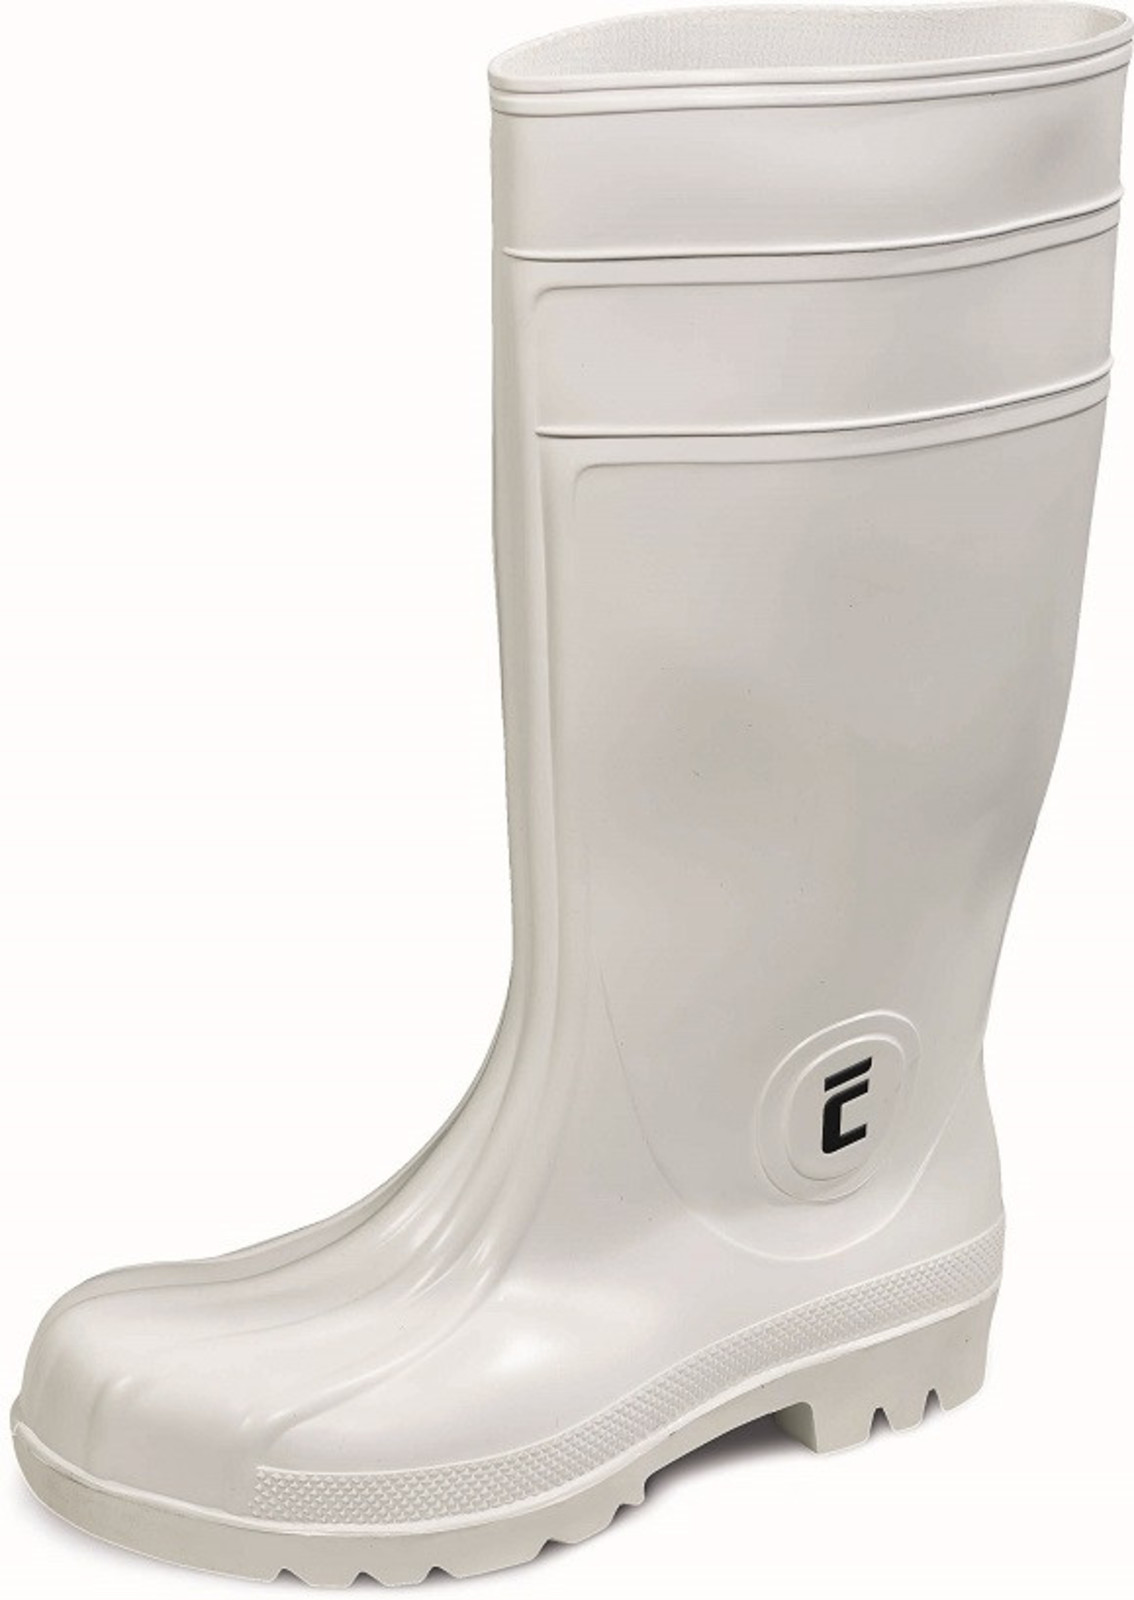 Bezpečnostné gumáky Eurofort S4 - veľkosť: 45, farba: biela